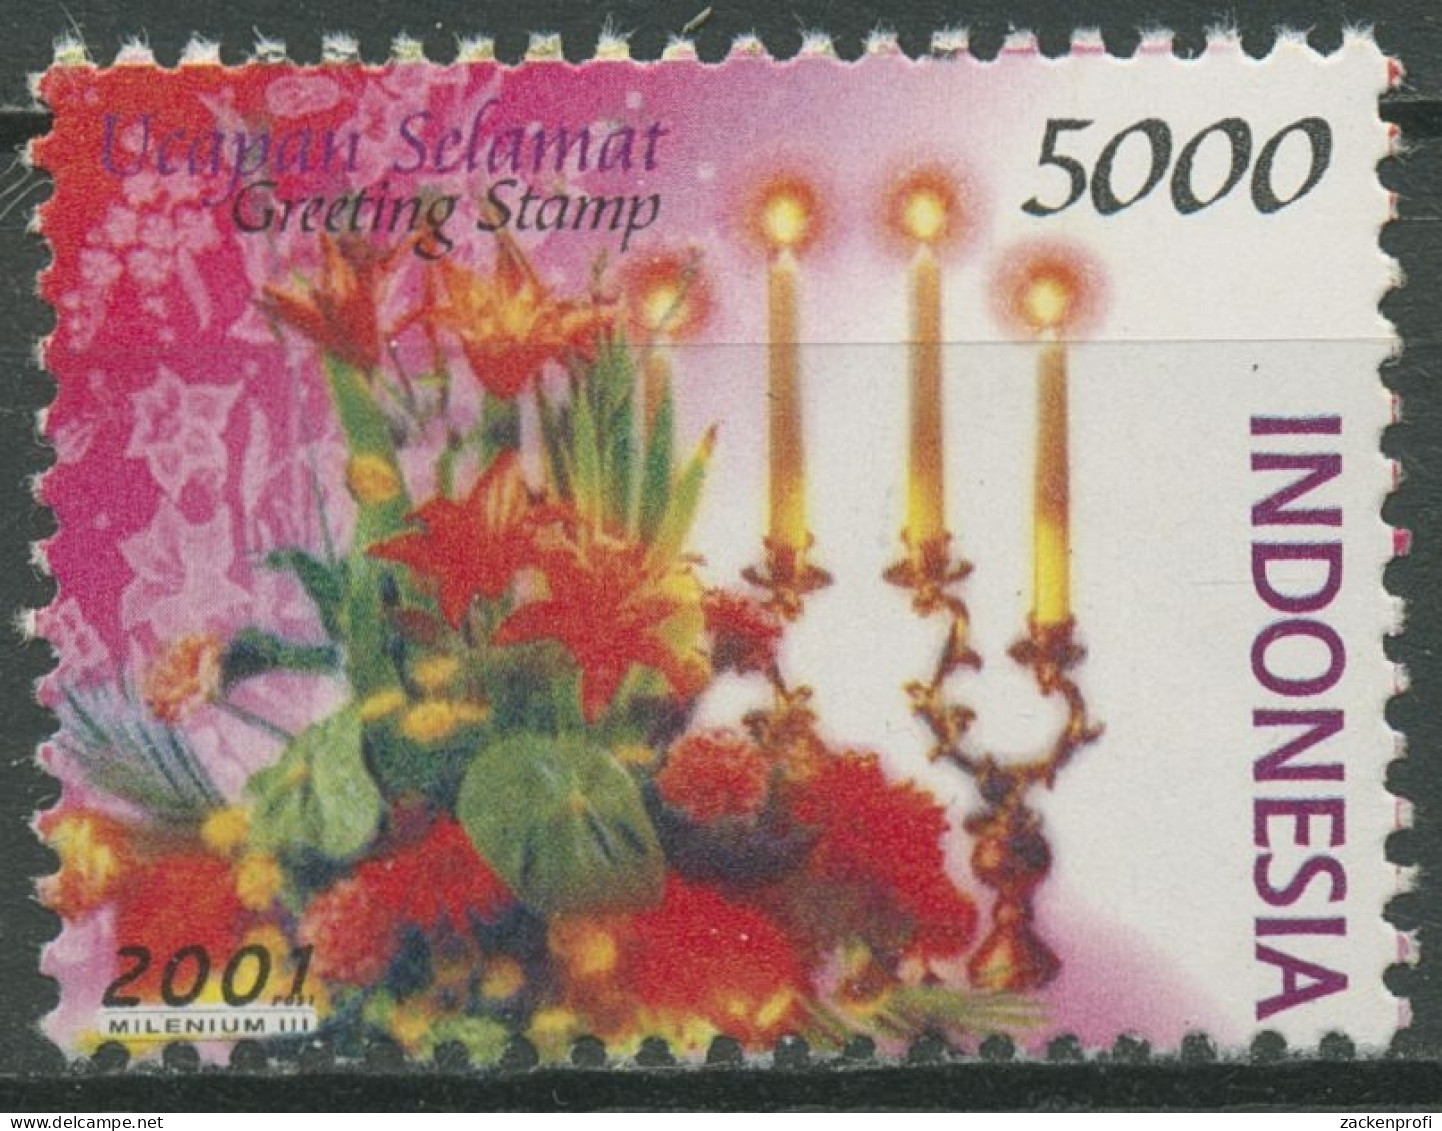 Indonesien 2001 Grußmarken Blumen Blumenbouquet Mit Kerzen 2107 Postfrisch - Indonésie